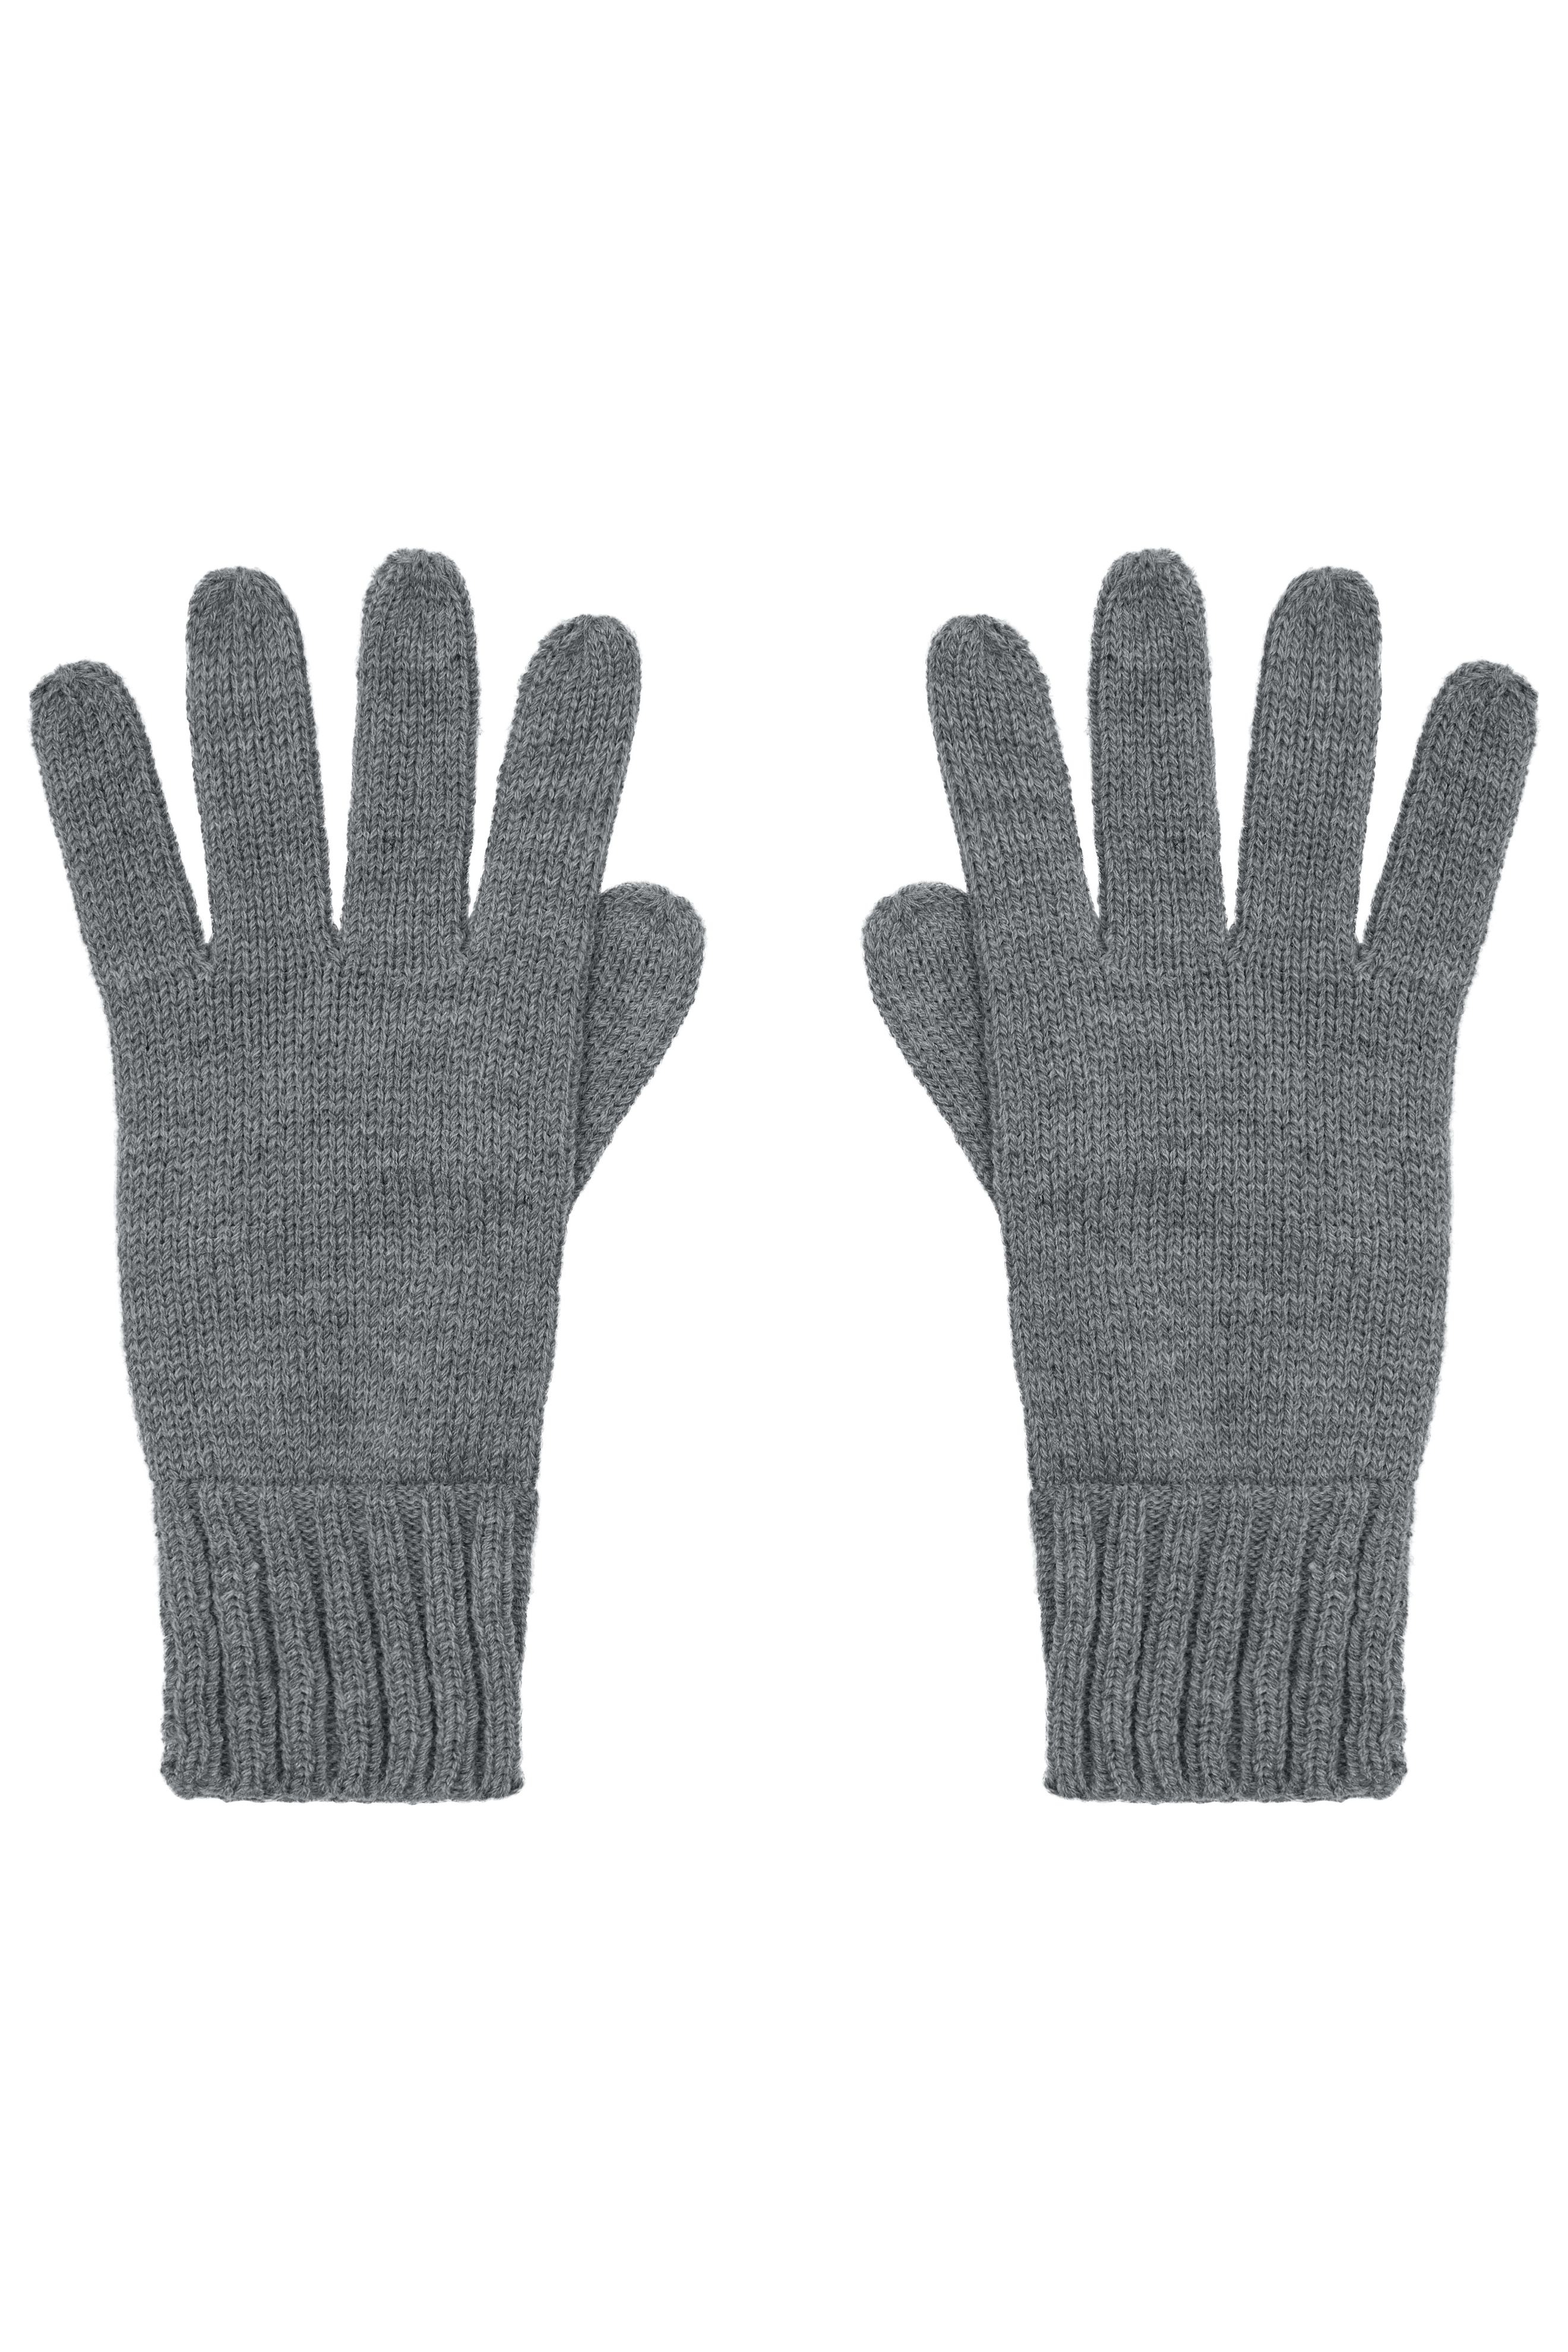 Knitted Gloves MB505 Strickhandschuhe mit gerippten Bündchen für Damen und Herren